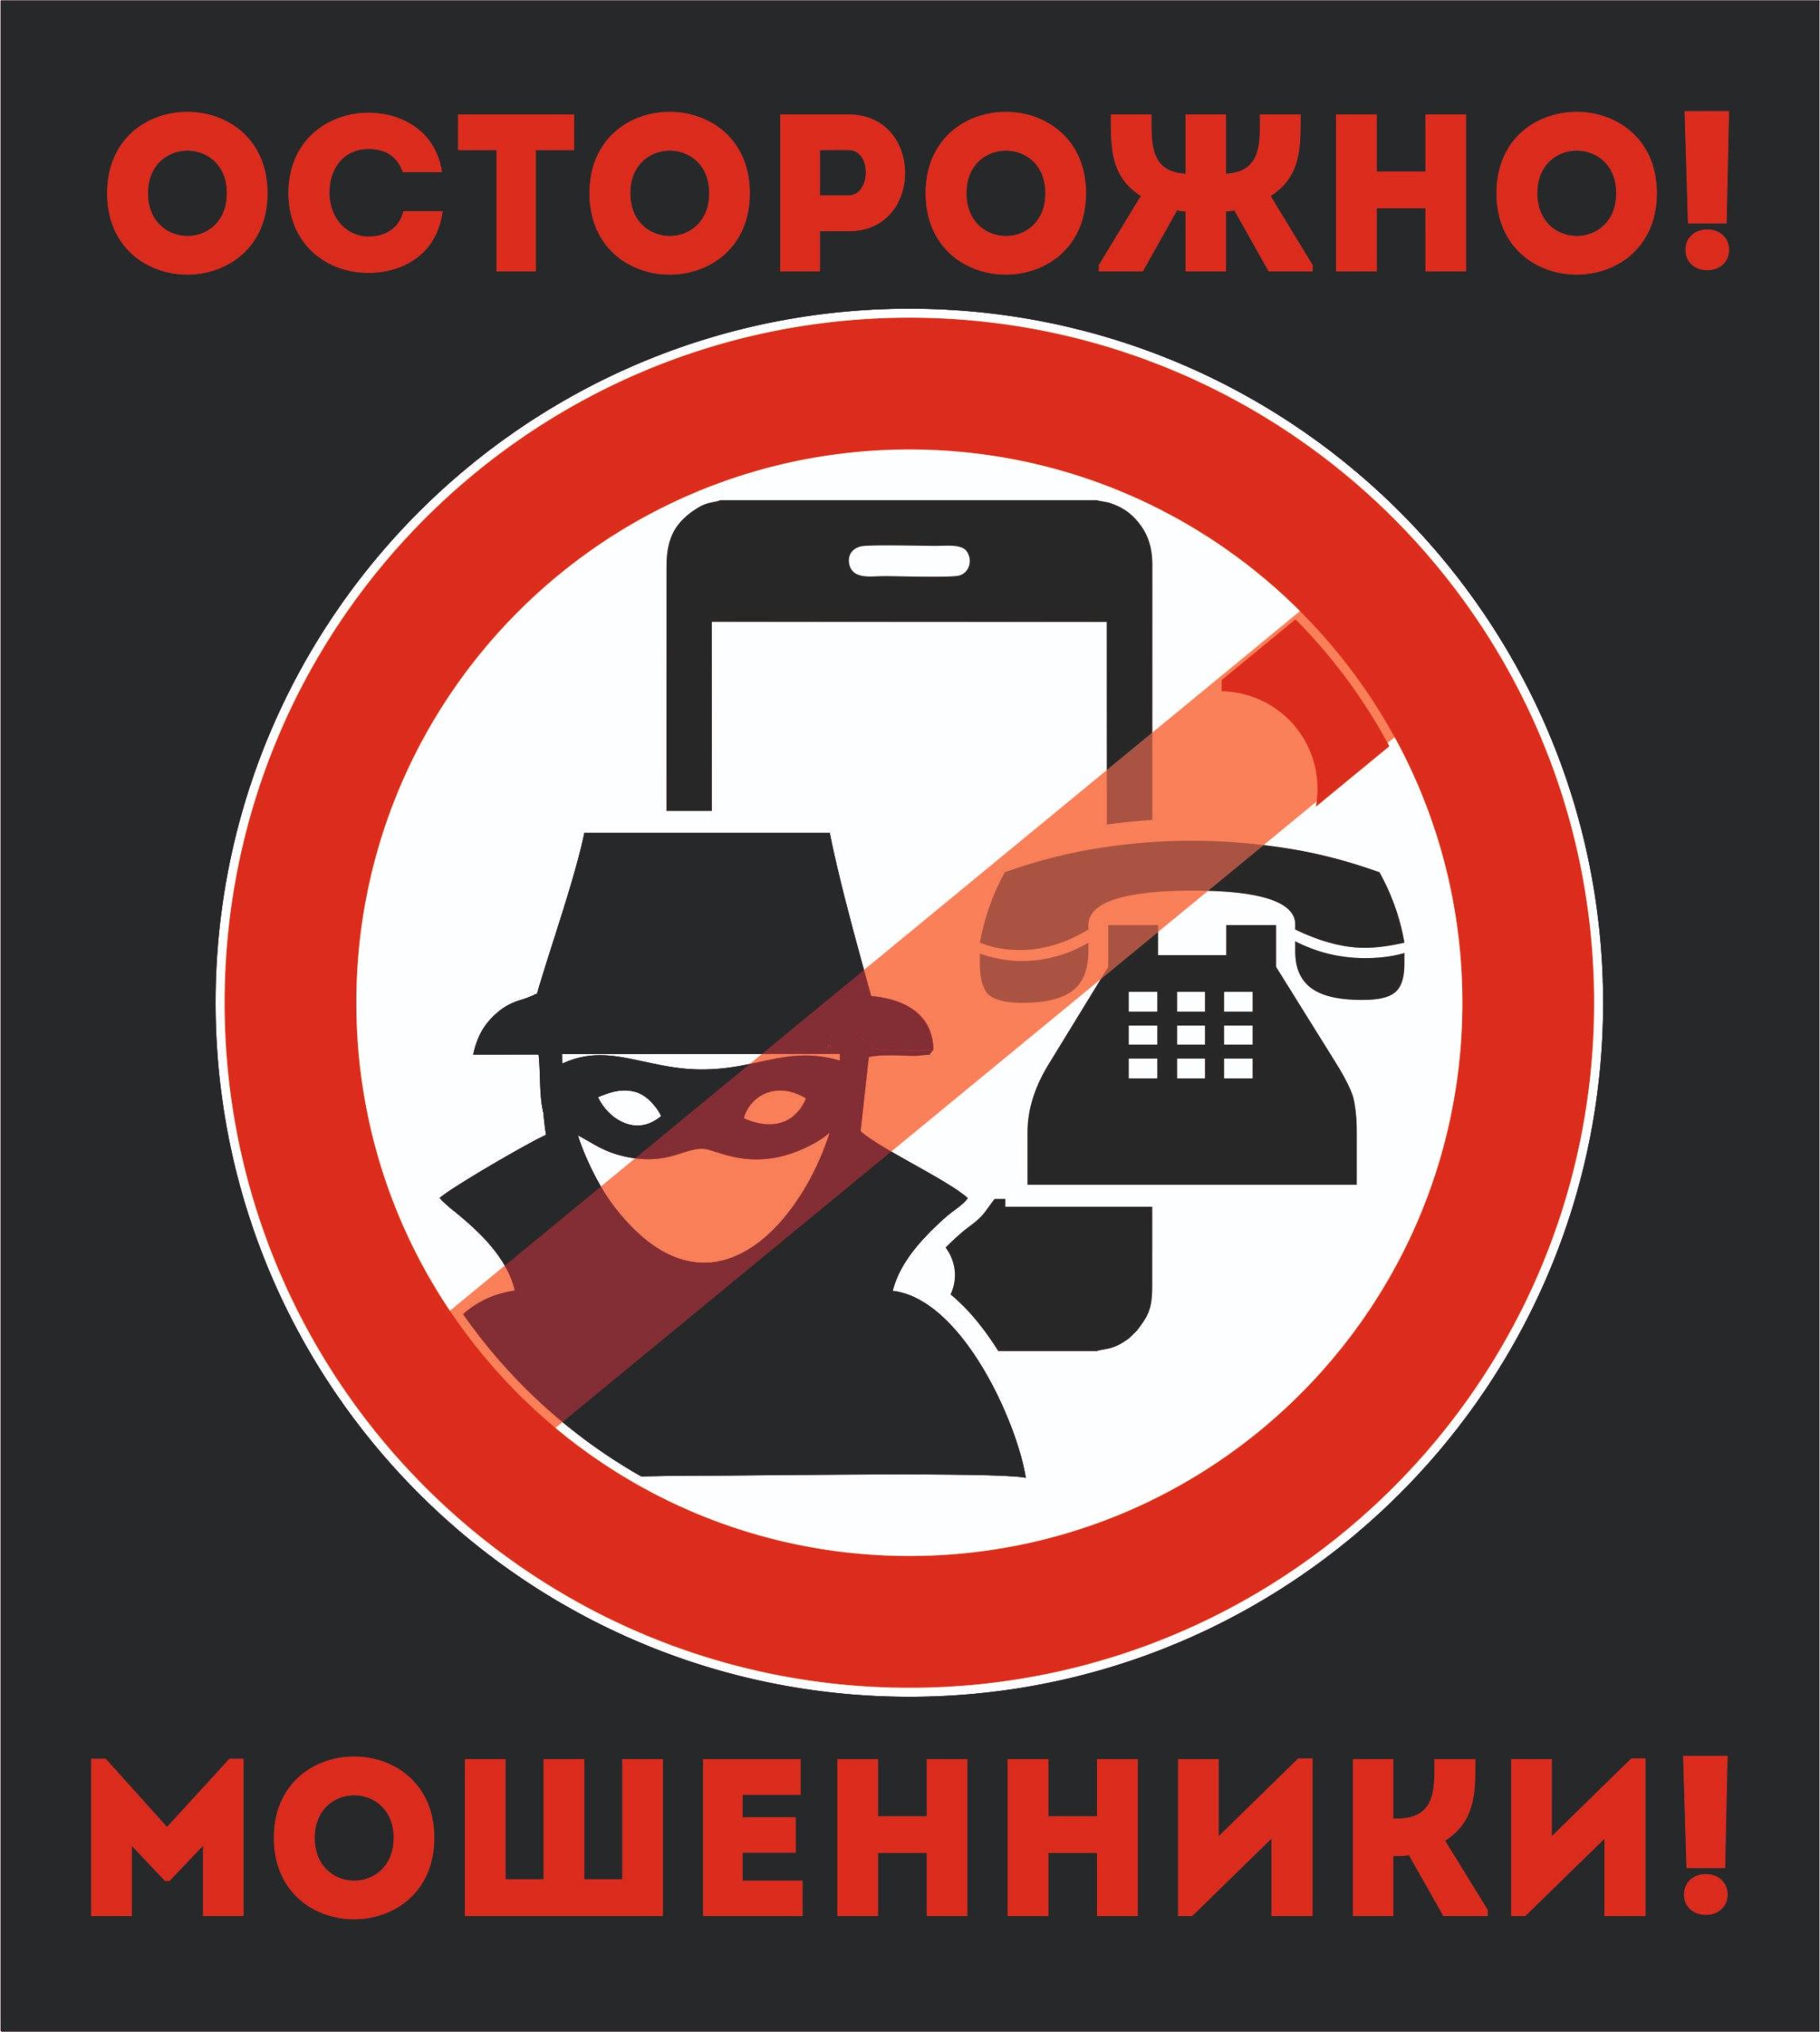 Орловчан предупредили о новых методах, которые используют дистанционные мошенники